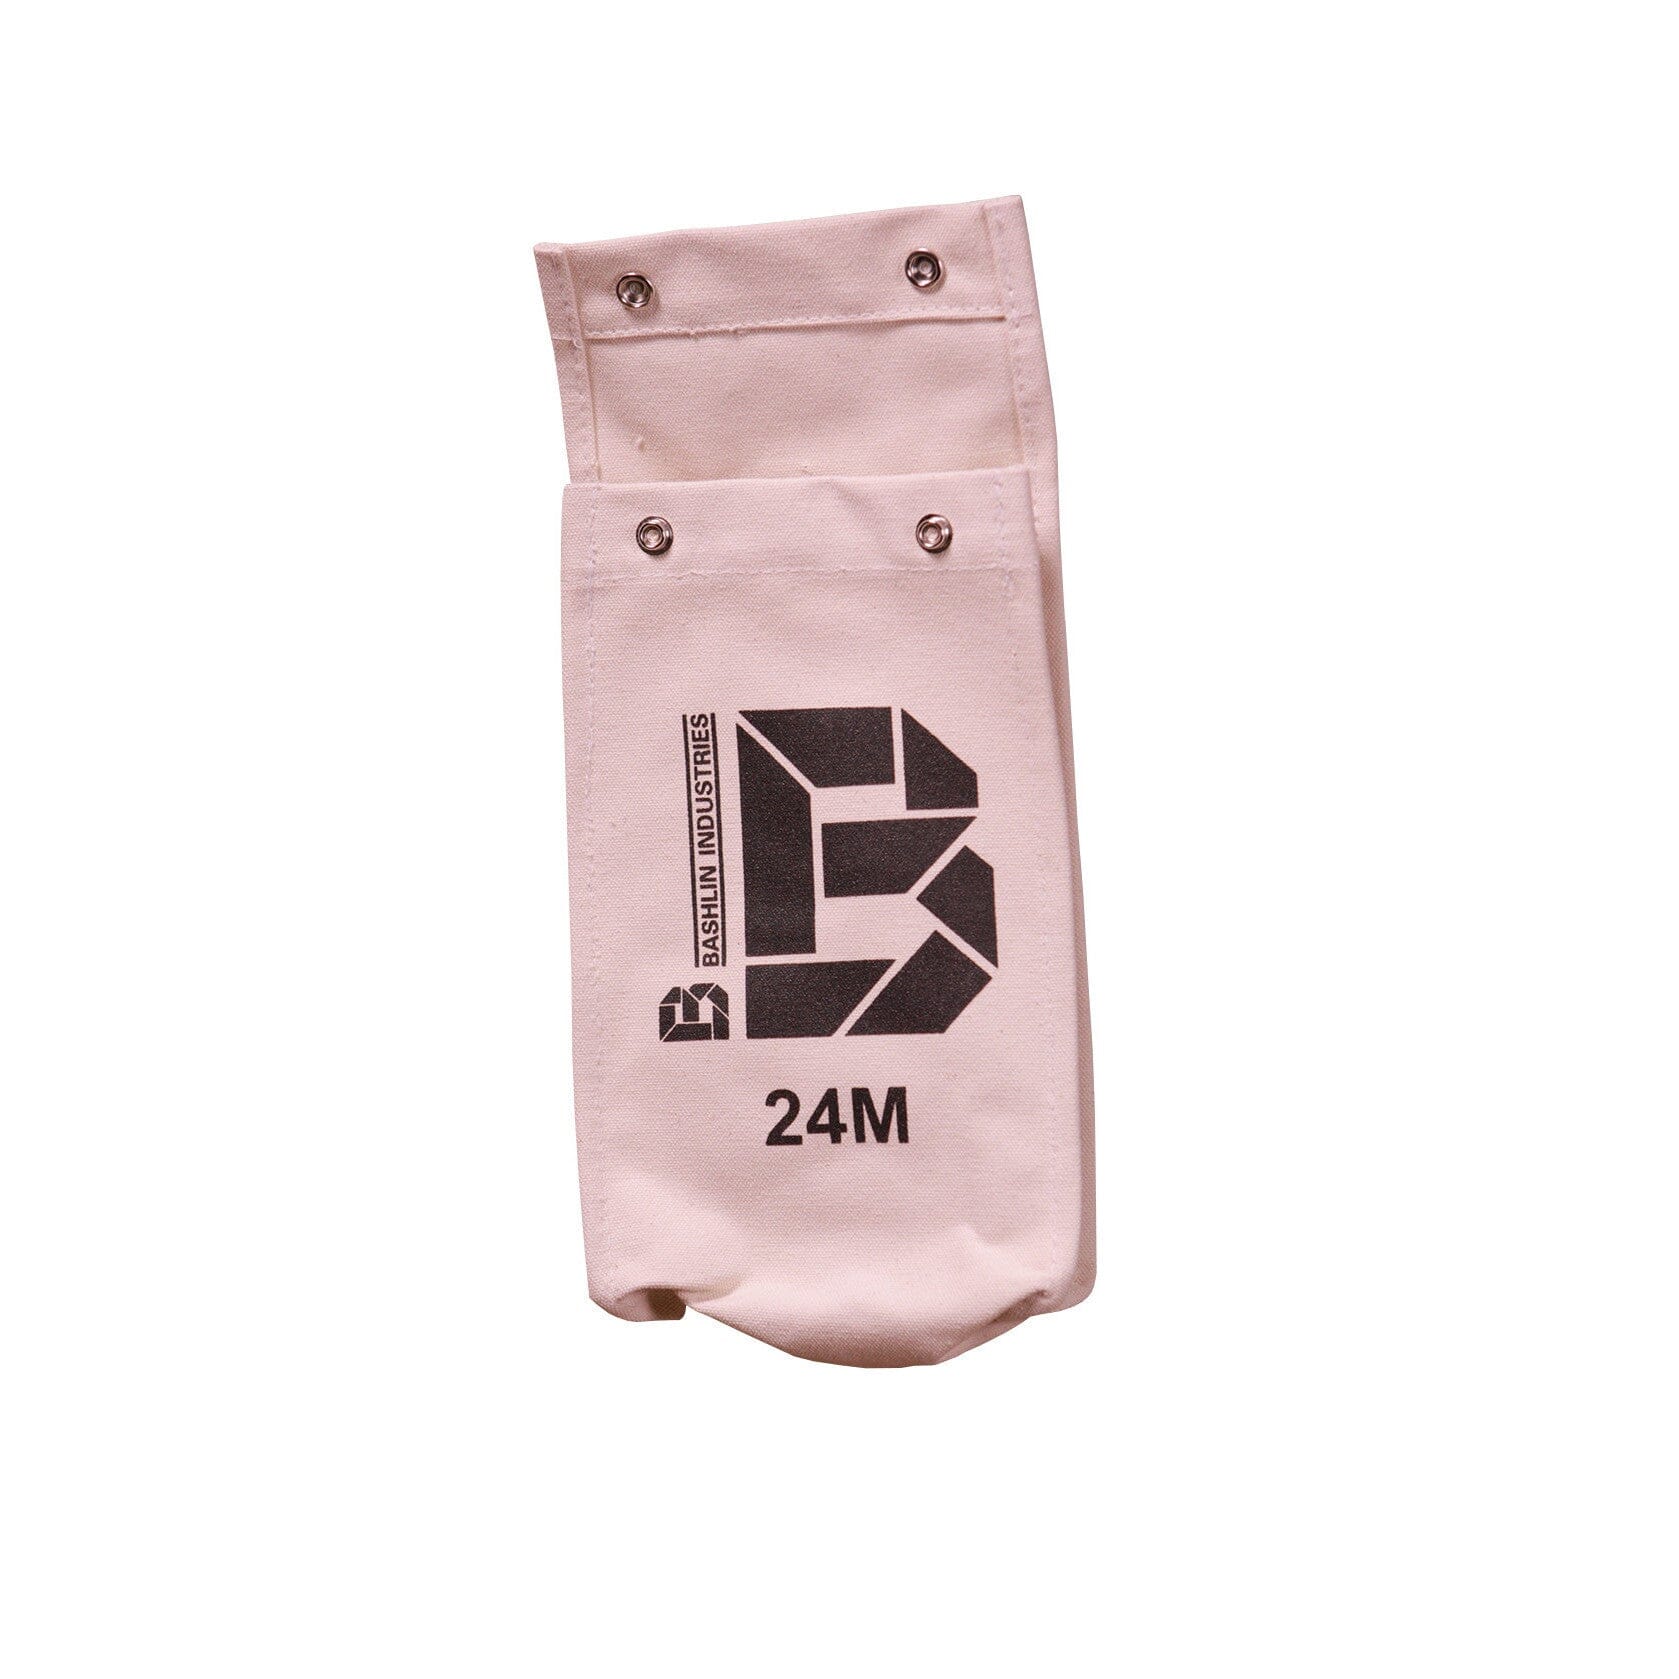 Bashlin 24M 2 Pocket Glove Bags Linemans Glove Protector Bag